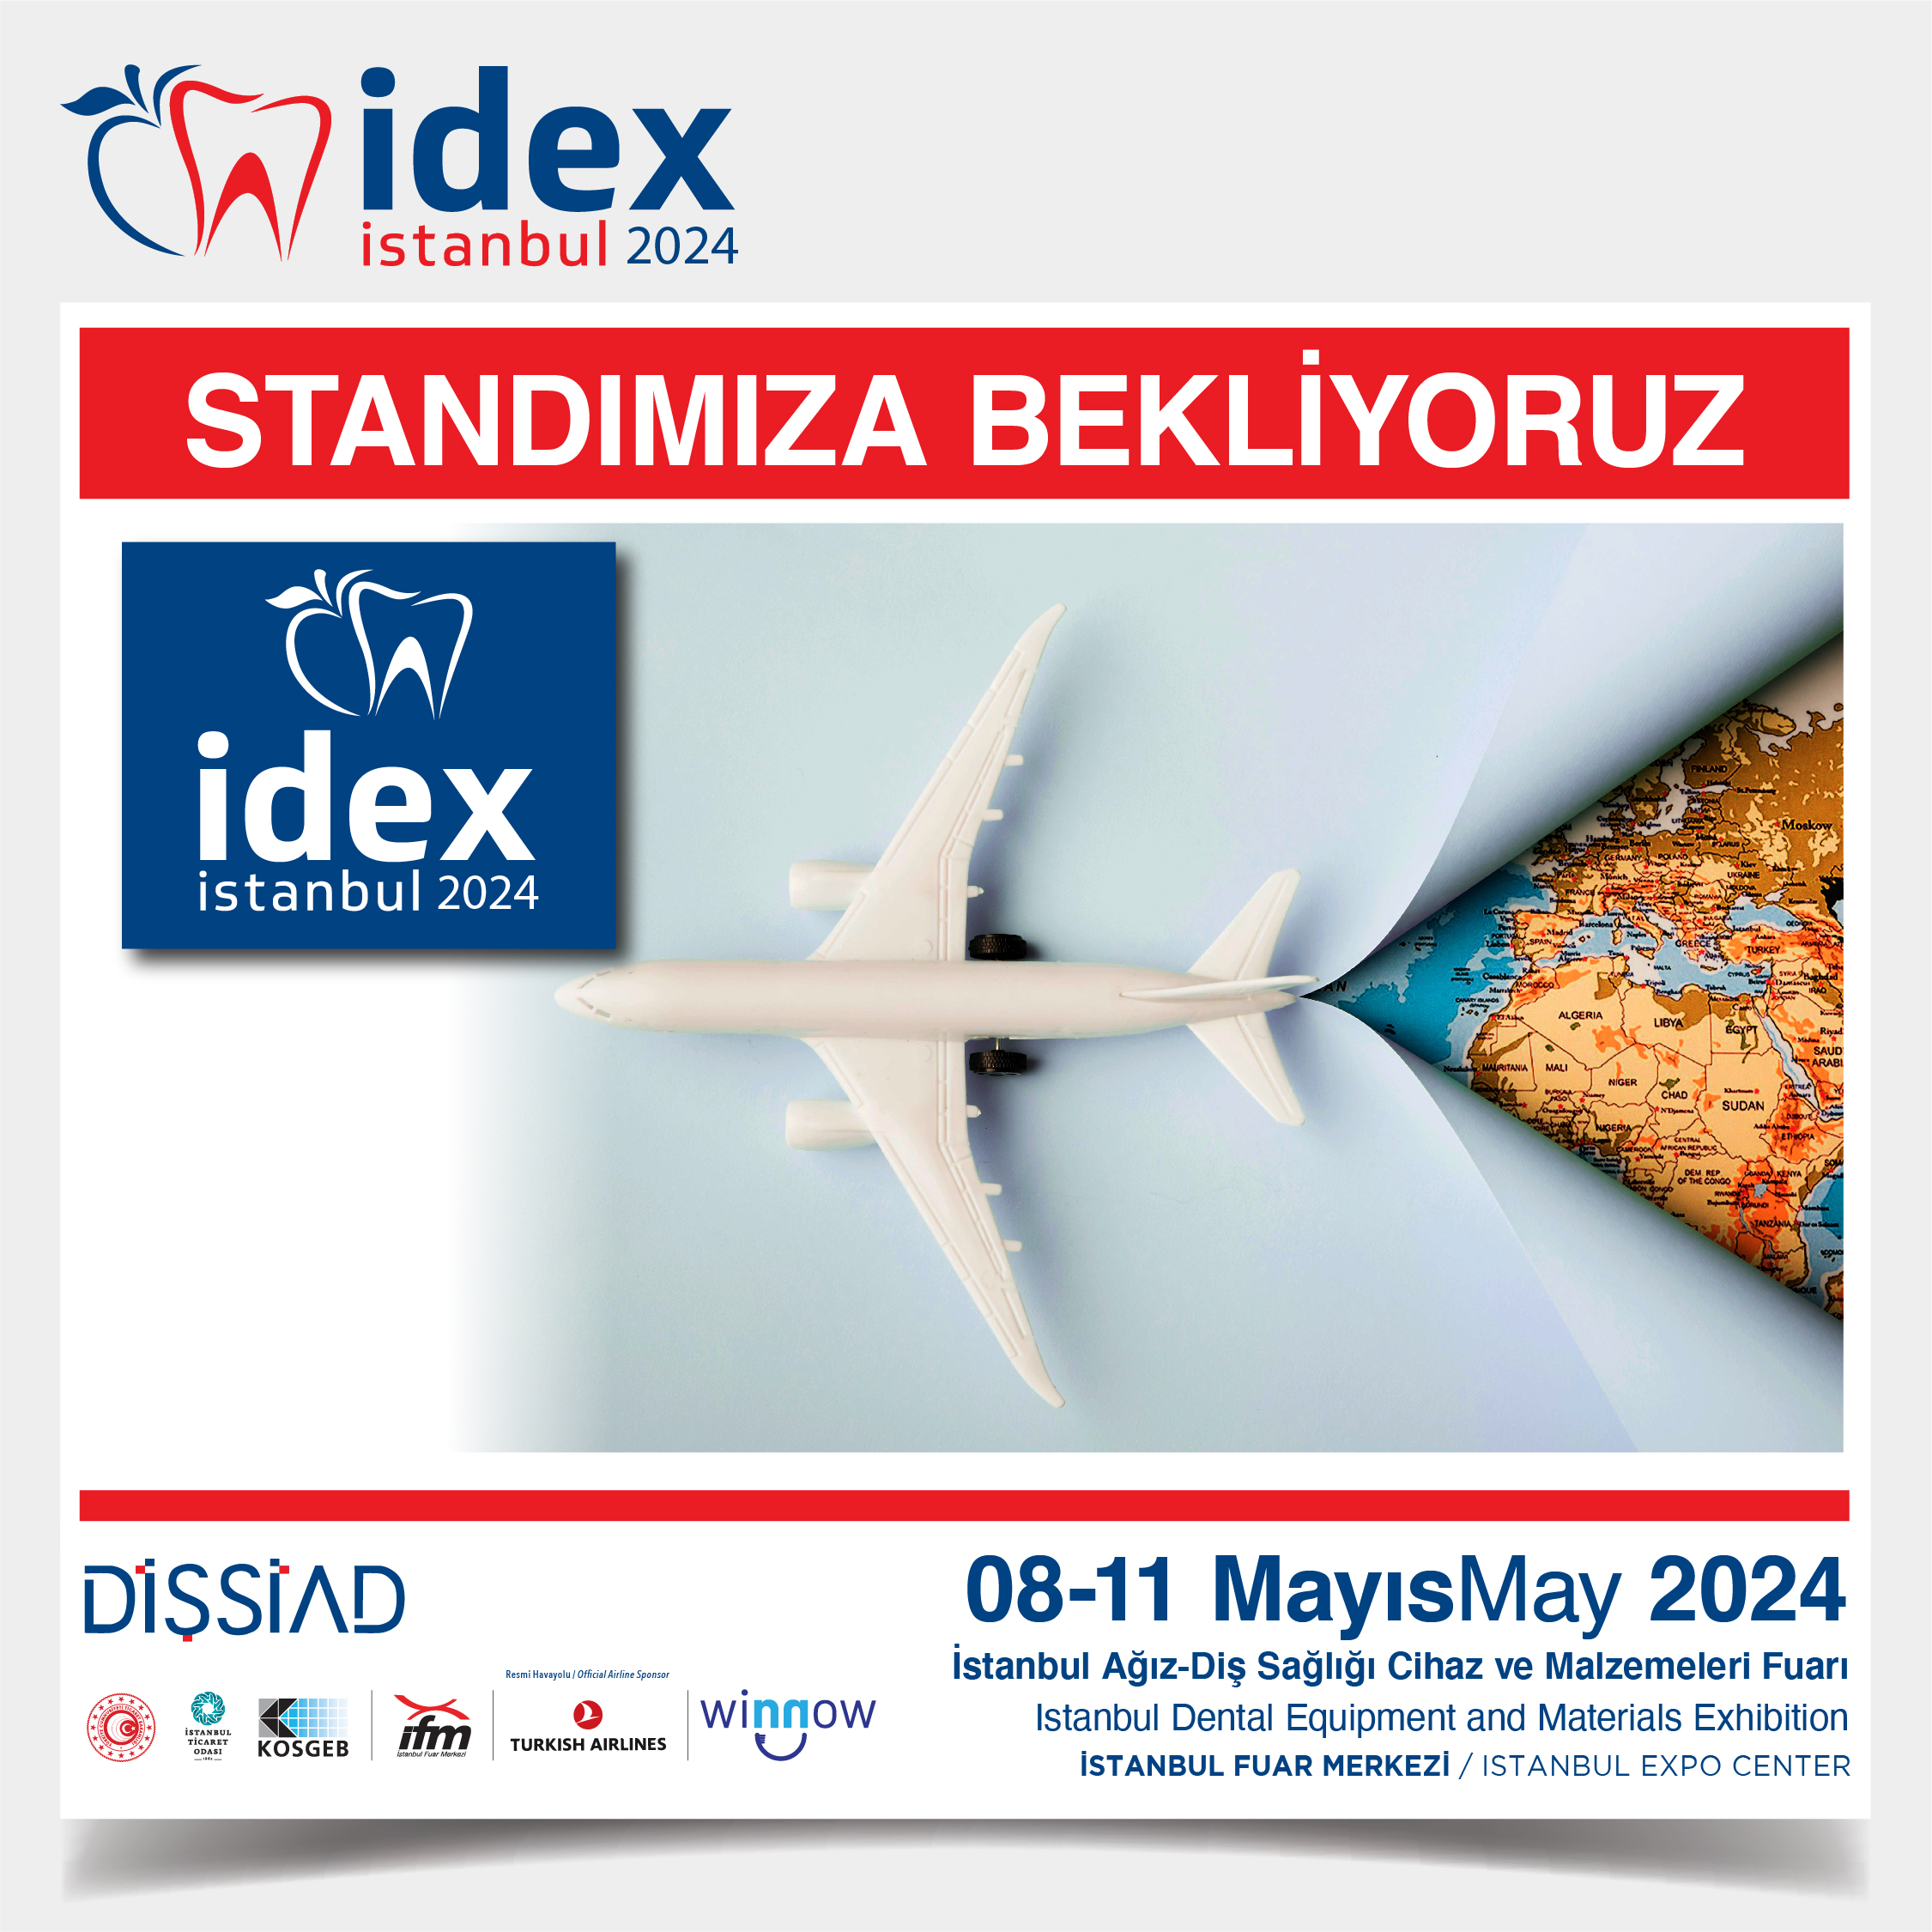 SOSYAL MEDYA MATERYALLERİ IDEX İstanbul 2024